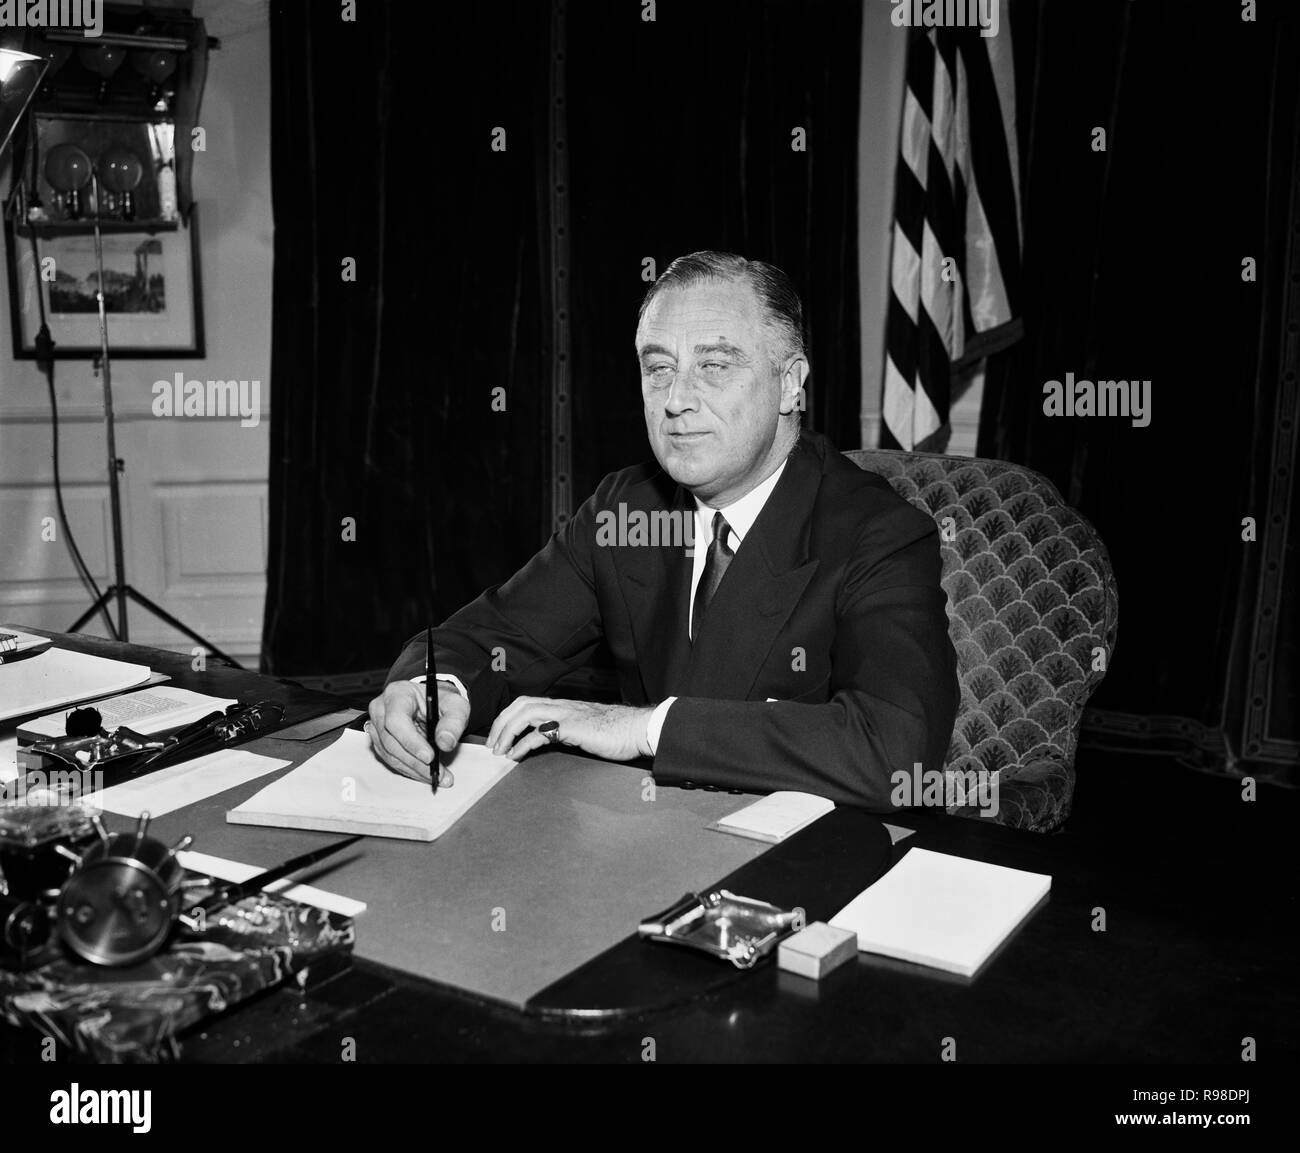 Stati Uniti Il presidente Franklin Roosevelt alla sua scrivania, Ufficio Ovale, Casa Bianca a Washington DC, USA, Harris & Ewing, 1934 Foto Stock